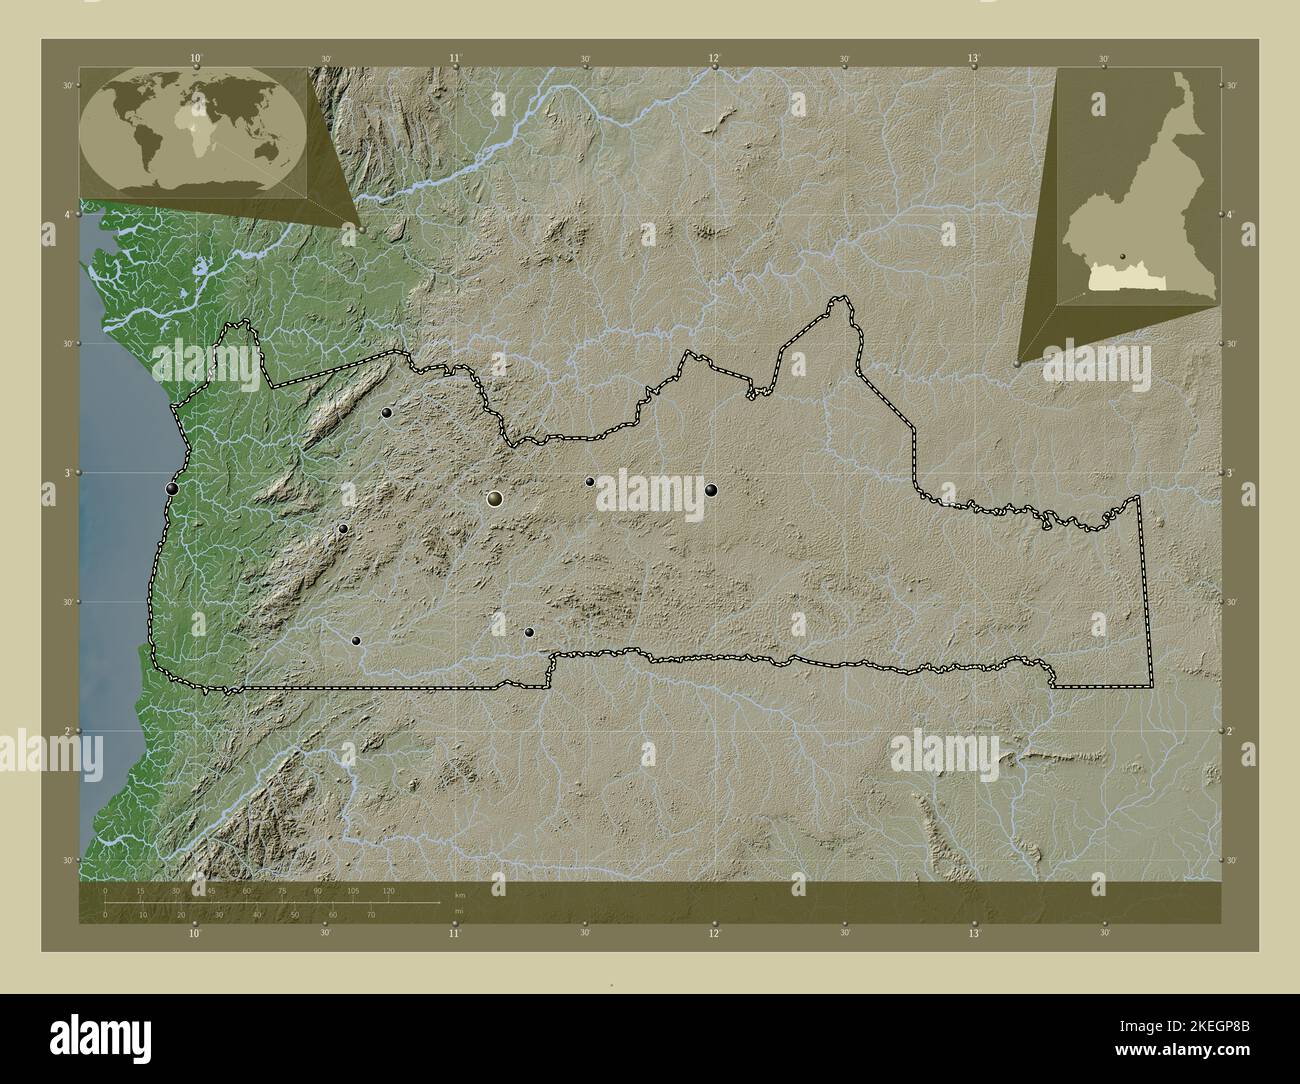 Sud, région du Cameroun. Carte d'altitude colorée en style wiki avec lacs et rivières. Lieux des principales villes de la région. Emplacement auxiliaire du coin Banque D'Images